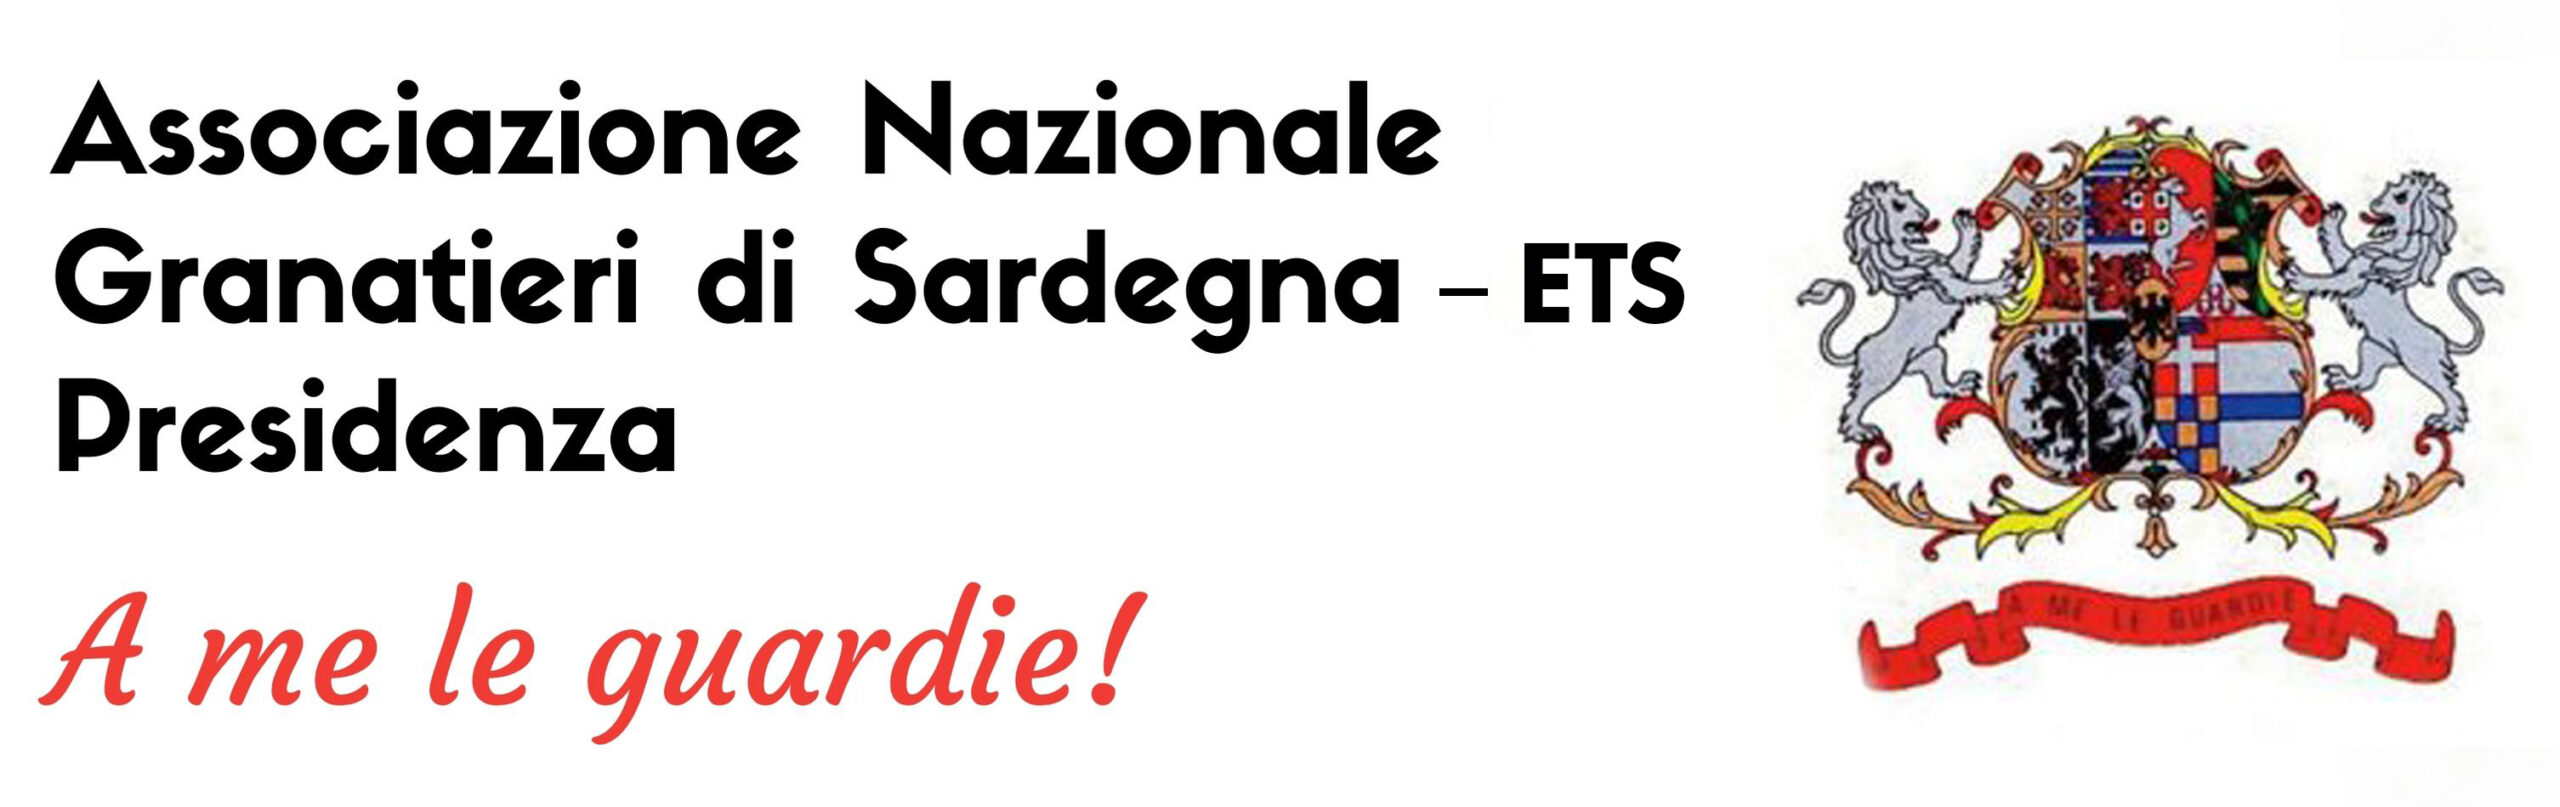 Associazione Nazionale Granatieri di Sardegna -ETS Presidenza